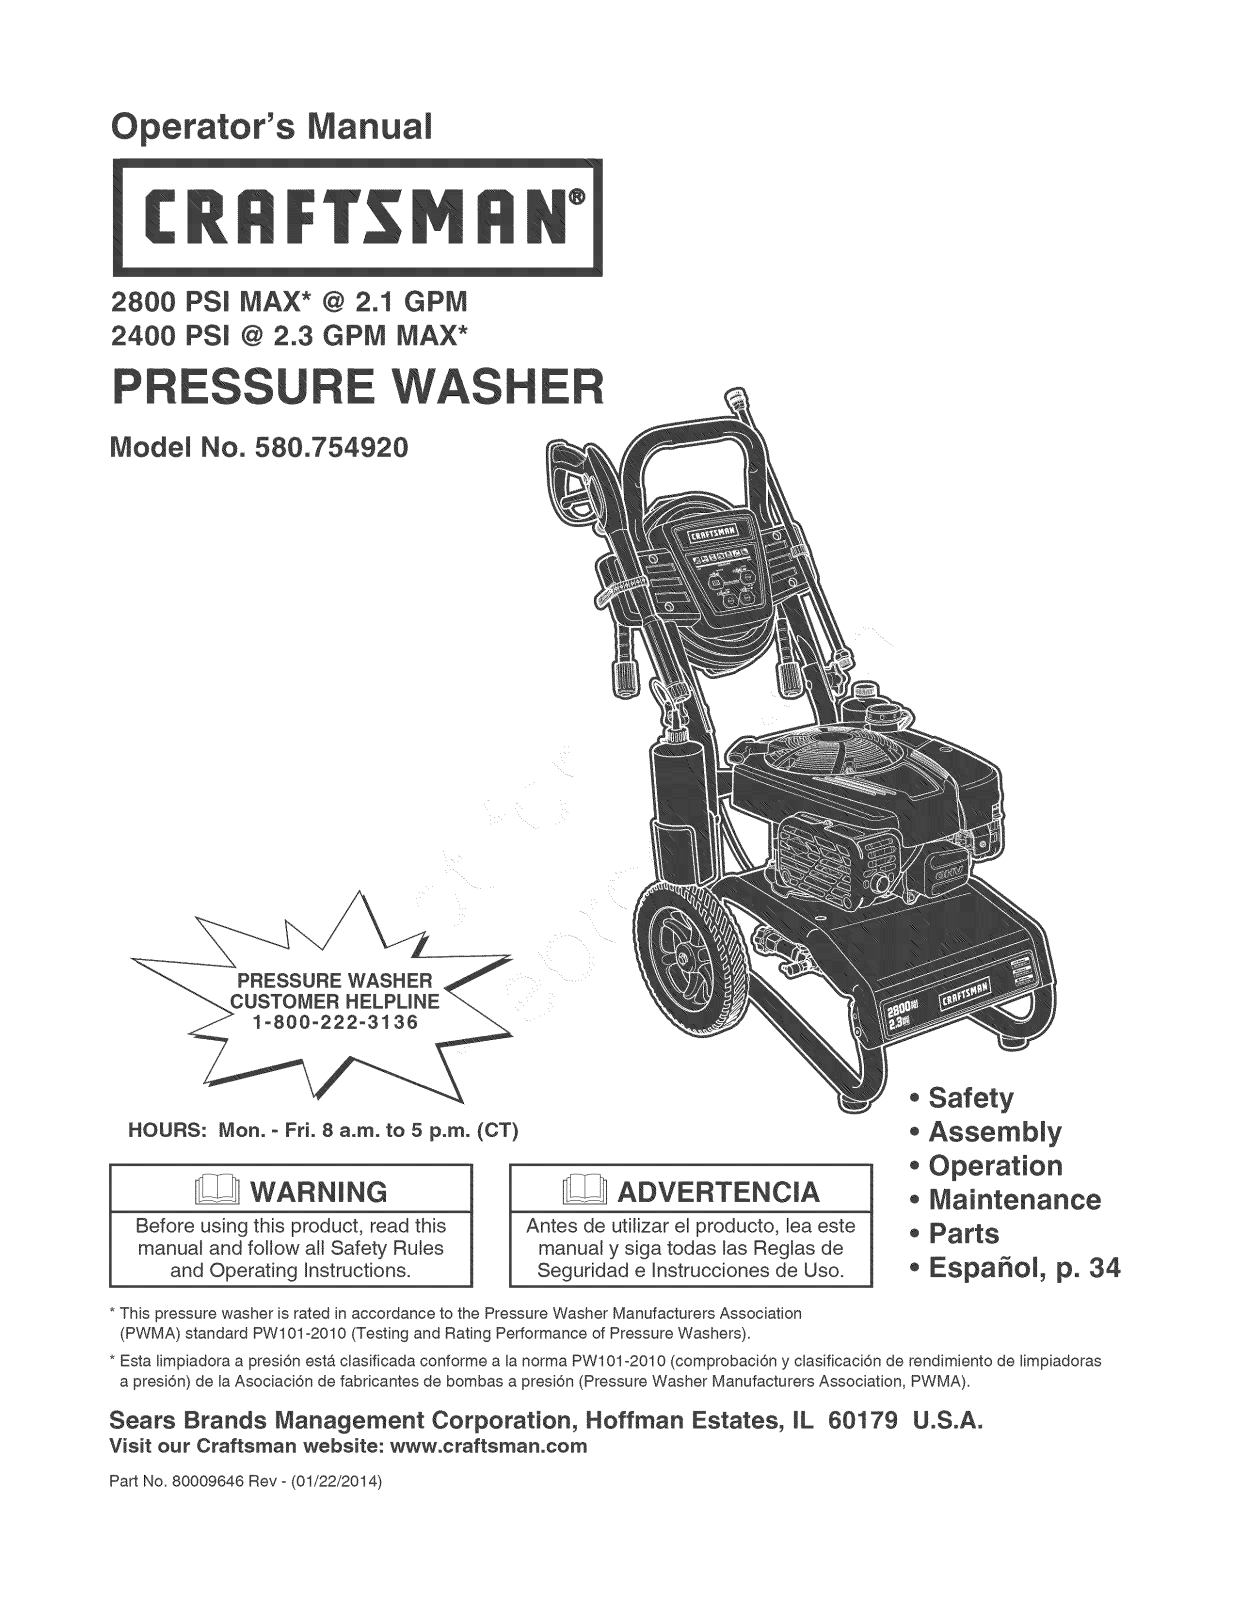 Craftsman 580.754920 User Manual